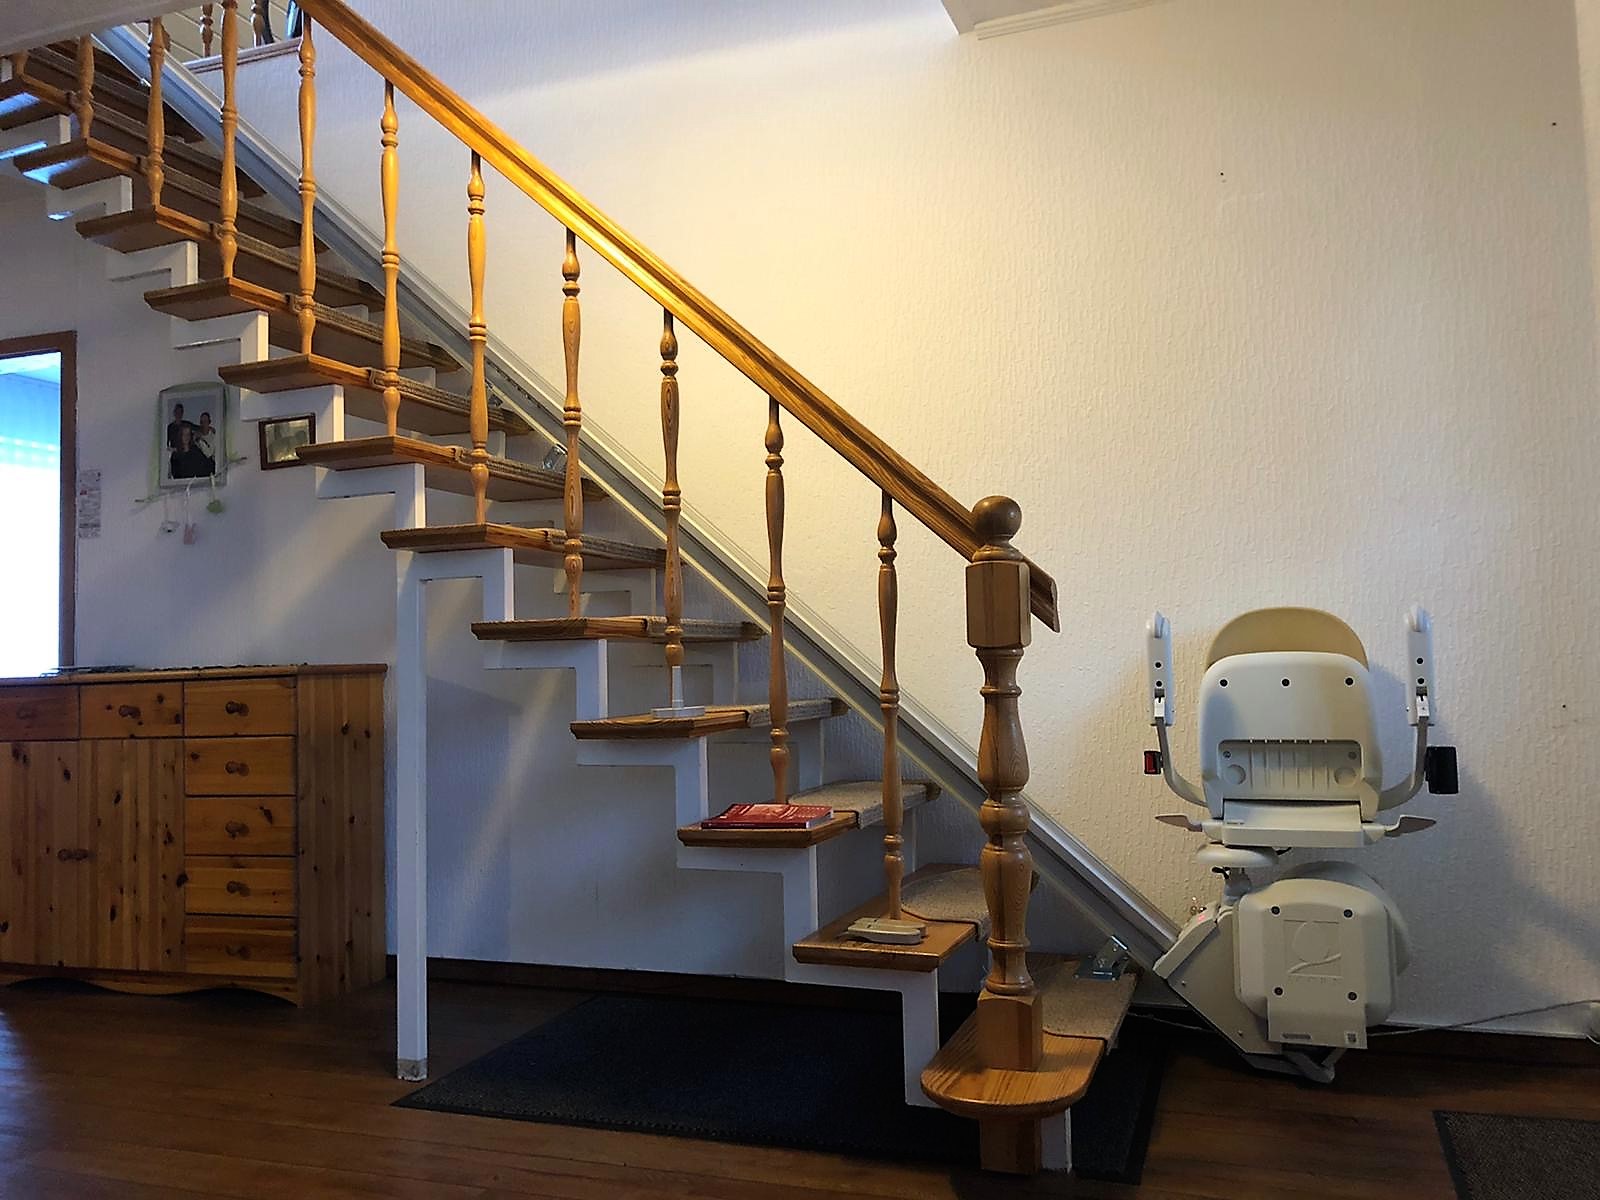 SG 130, Sitztreppenlift für eine gerade Treppe